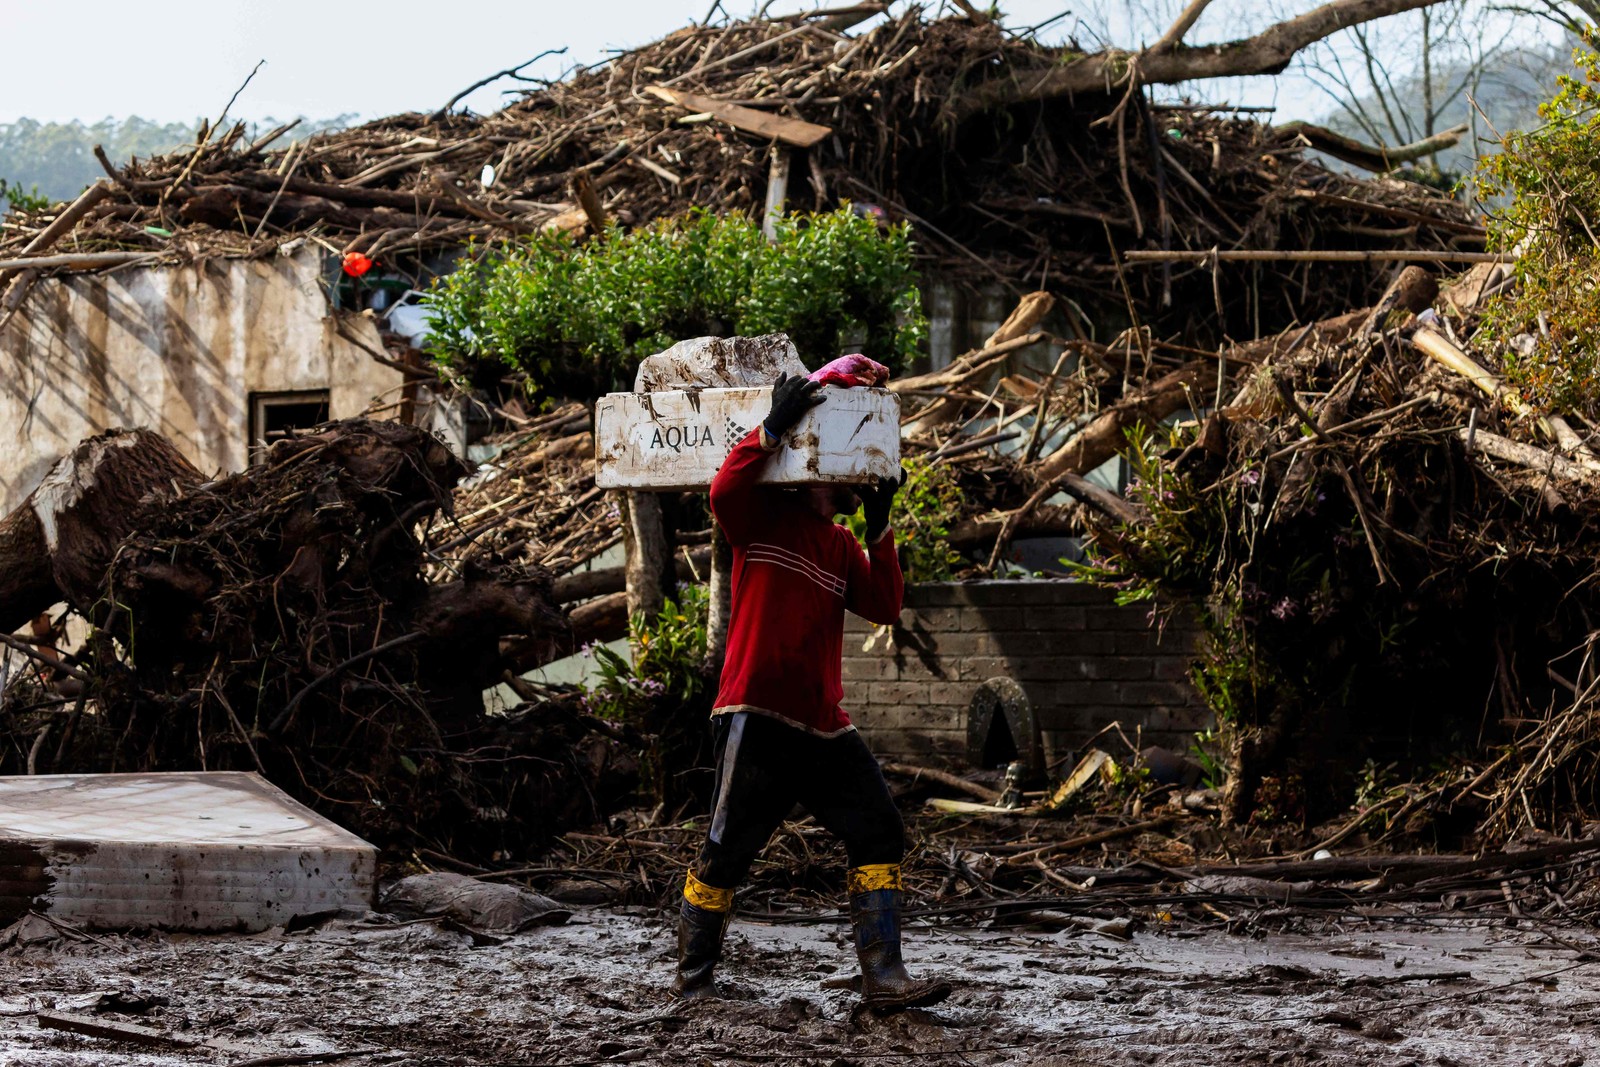 Um homem caminha com seus pertences por uma rua coberta de lama e detritos após um ciclone em Muçum, Rio Grande do Sul — Foto: SILVIO ÁVILA/AFP